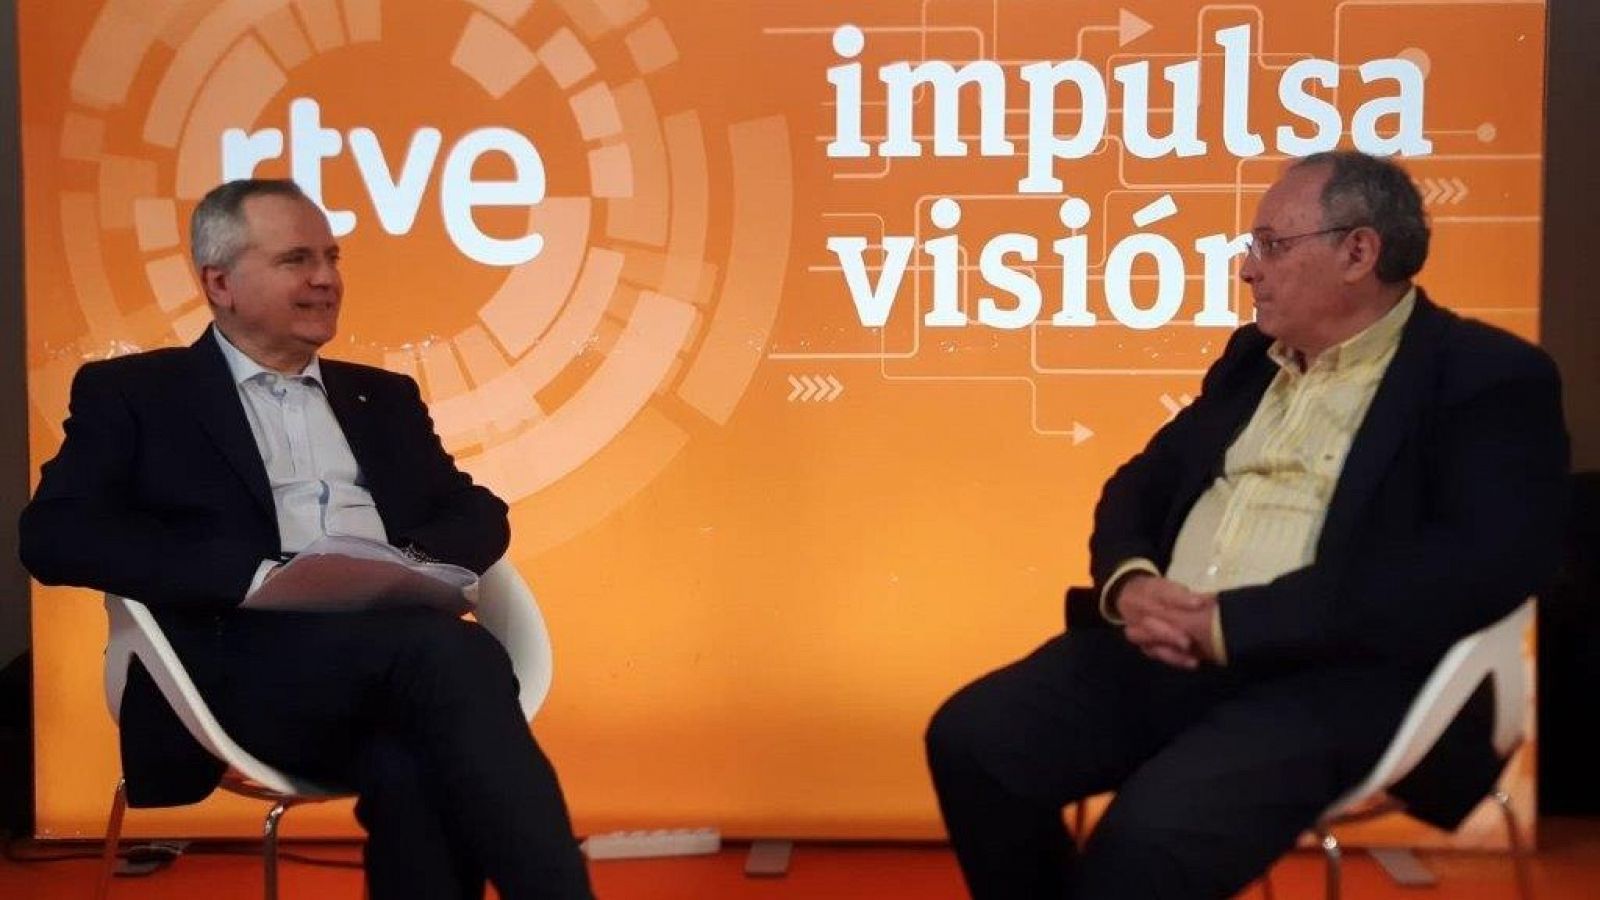 Impulsa Visión es la aceleradora de empresas de RTVE 